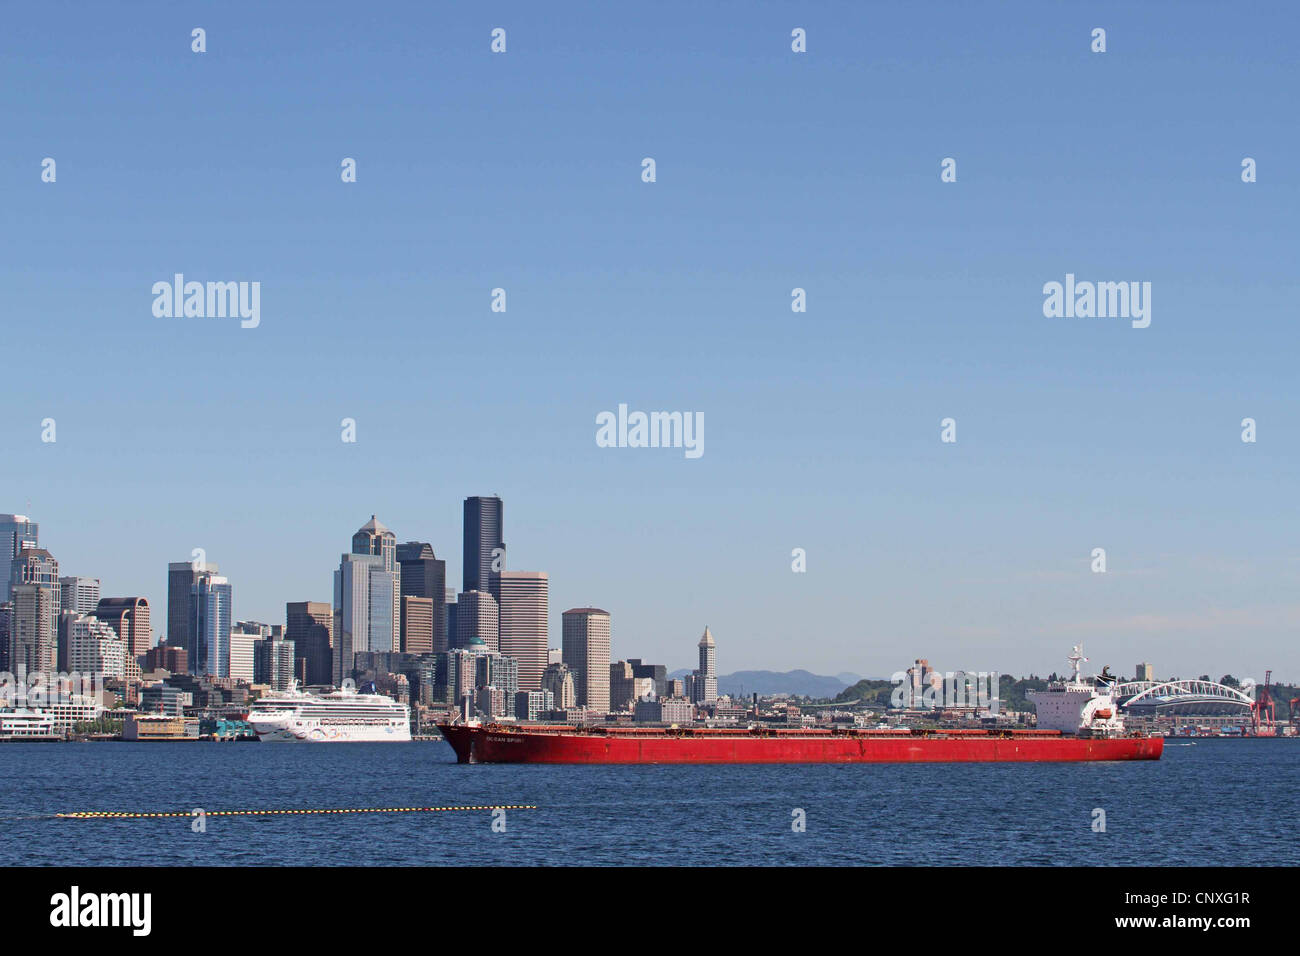 Tanker rouge dans le port, ou le port de Seattle Banque D'Images